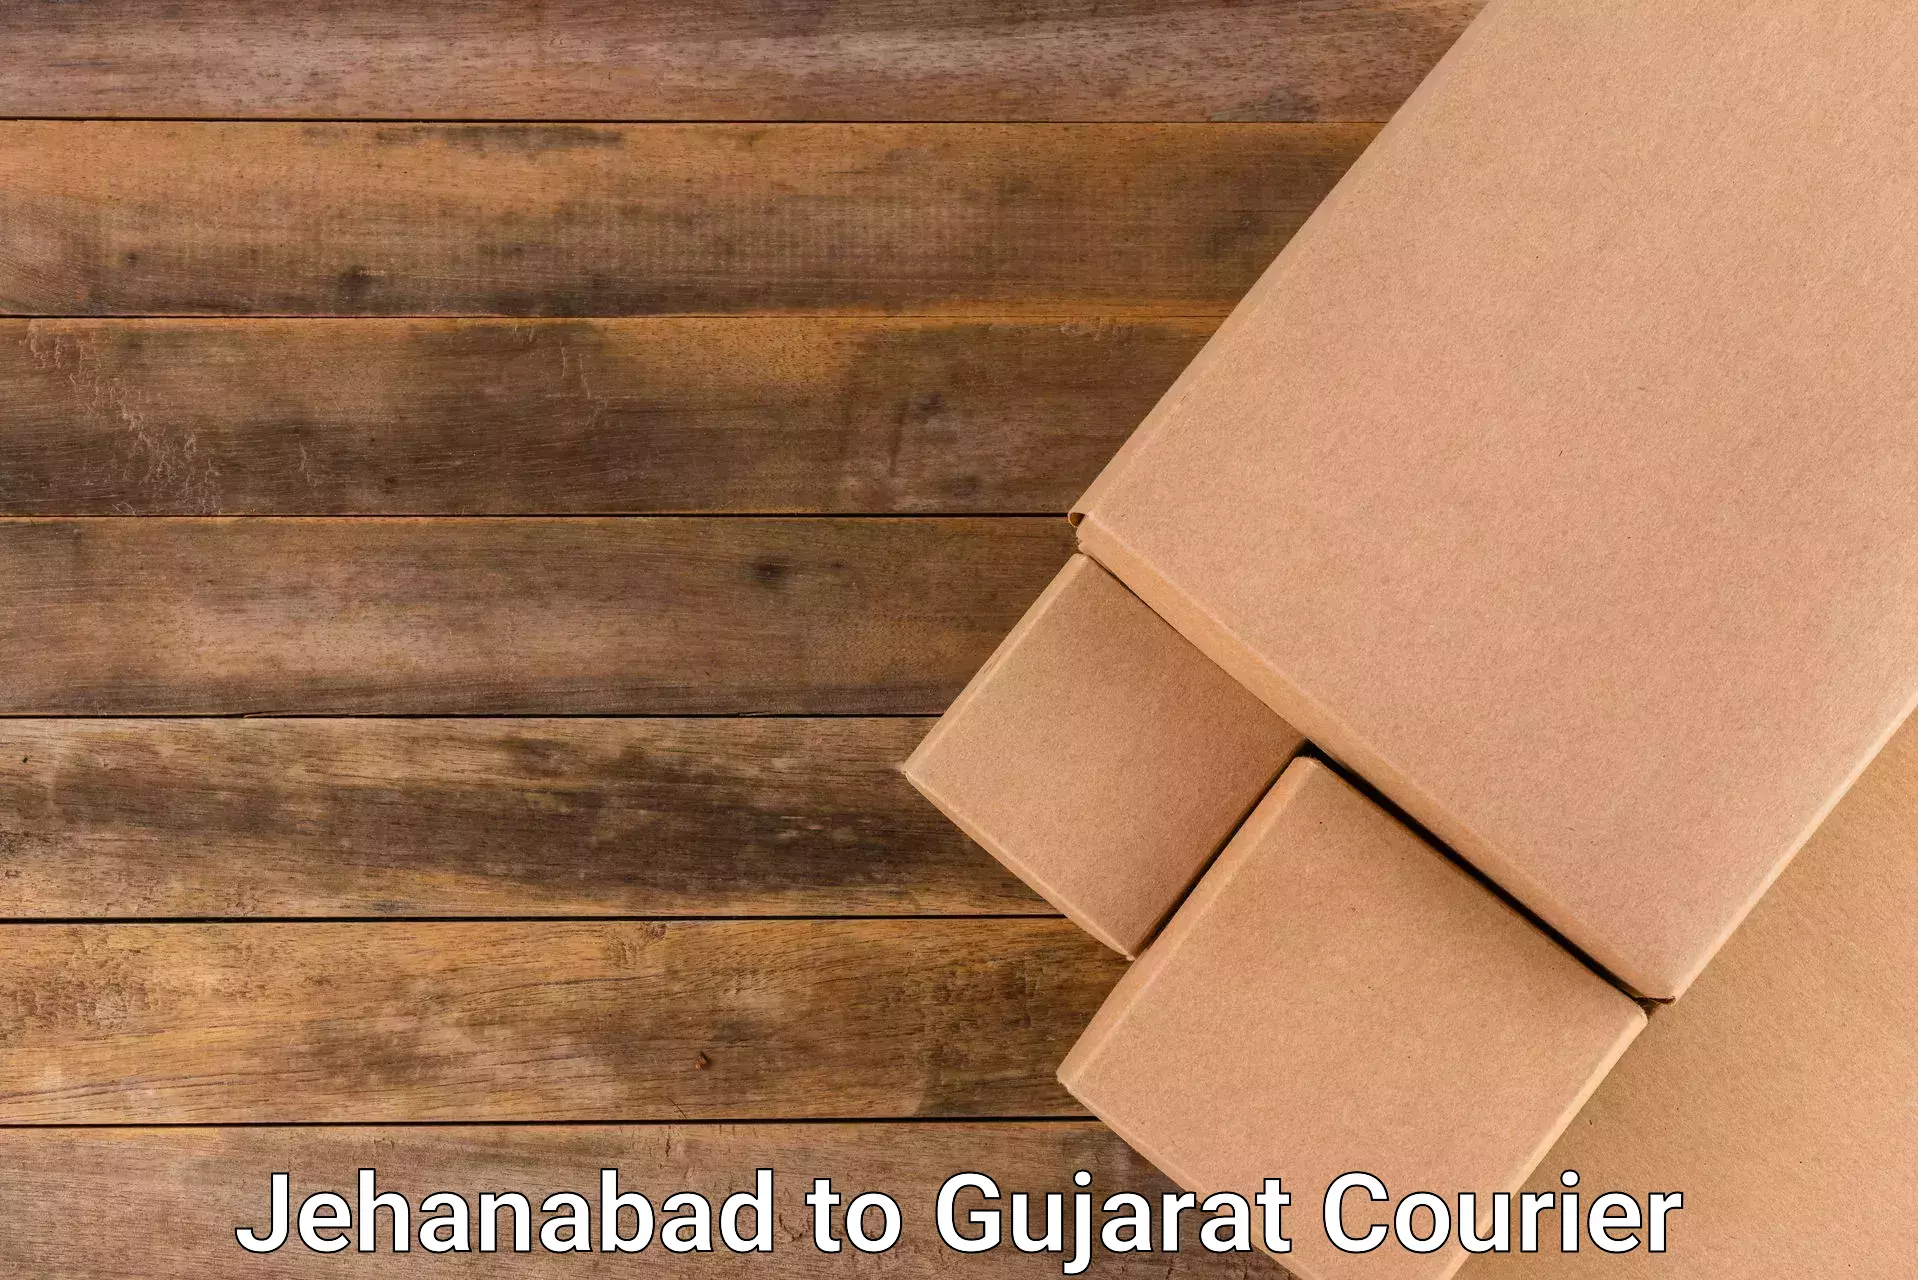 Cargo courier service Jehanabad to Jhagadia